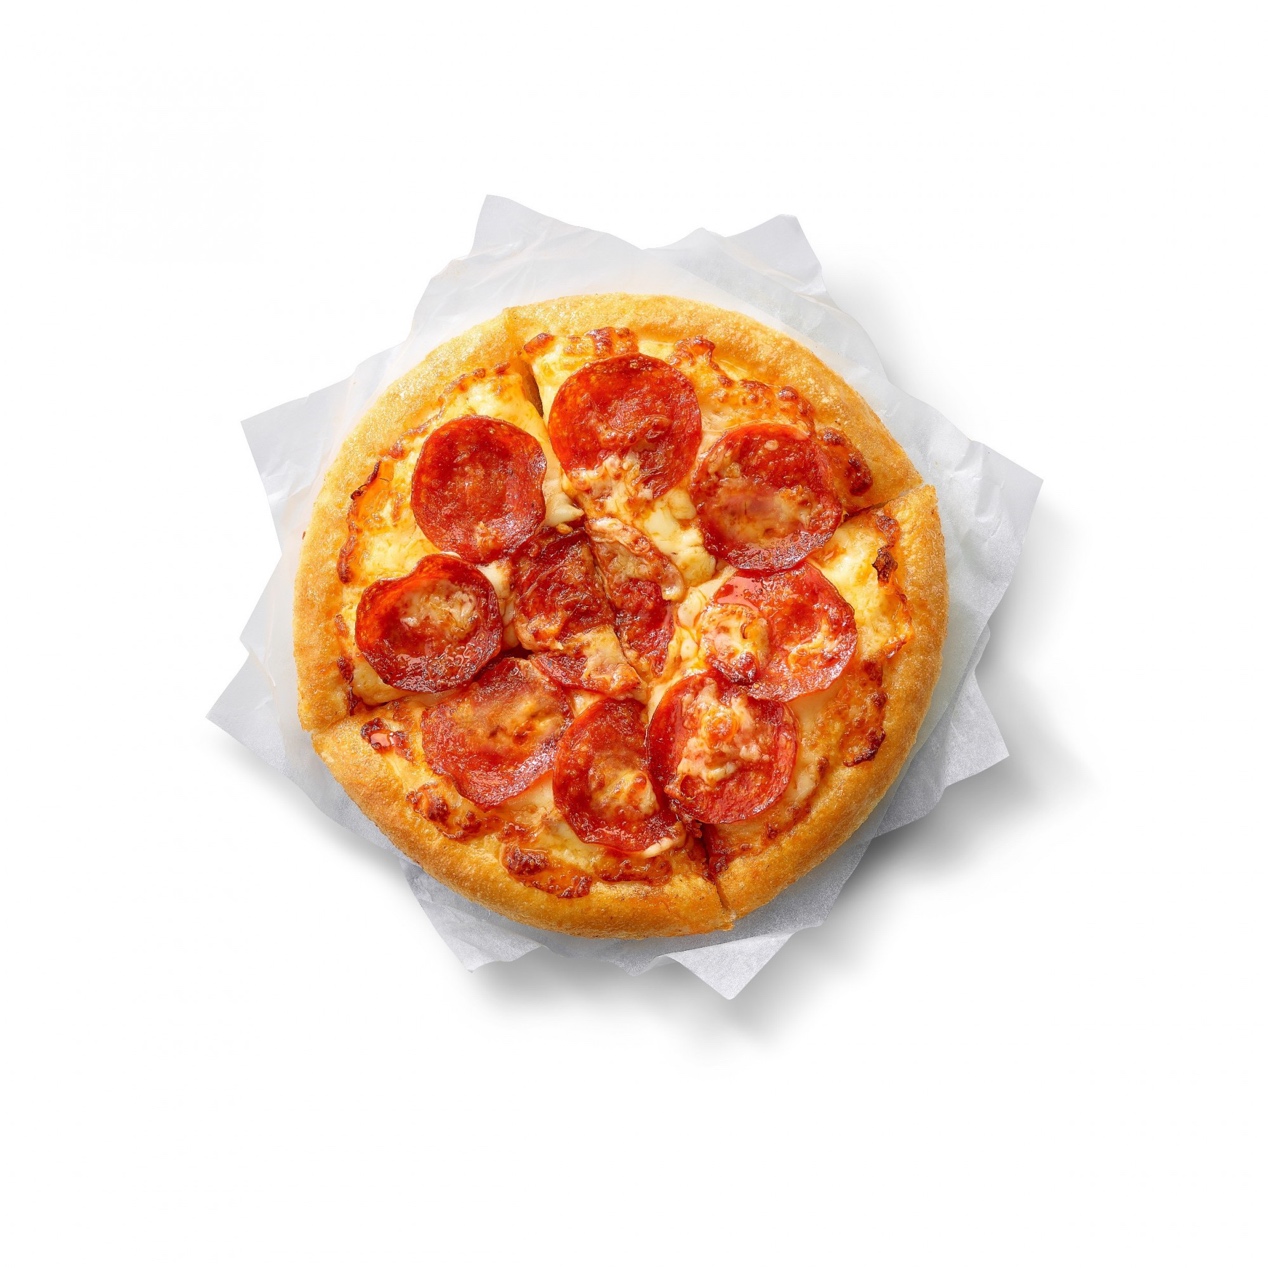 一張含有 食物, 碗盤, 廣場, 披薩 的圖片

自動產生的描述